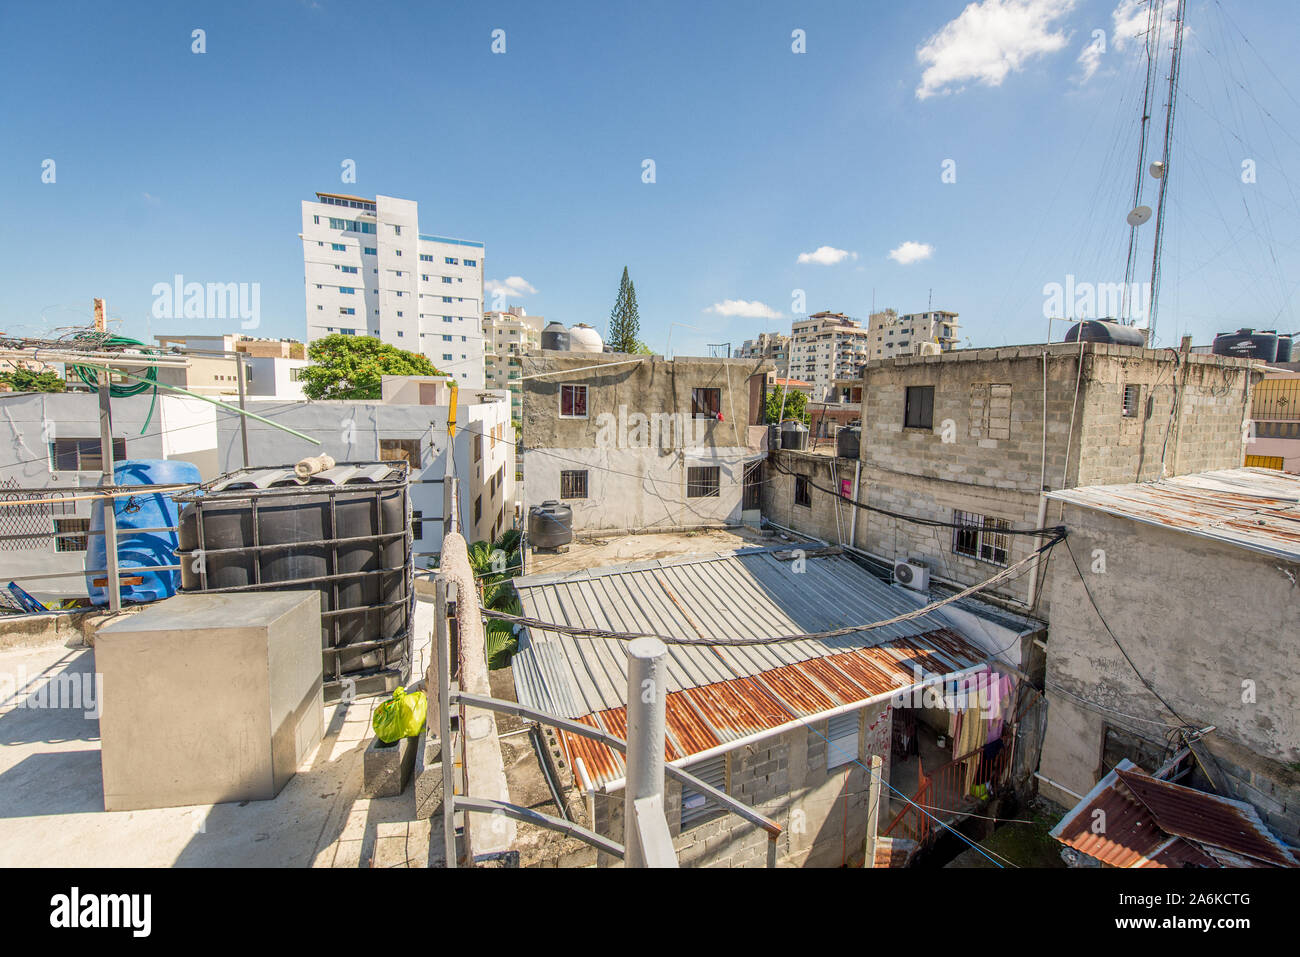 Santo Domingo, Repubblica Dominicana; 11 aprile 2014: vista sui tetti di alcune case di poveri, vi è molto caos mediante i fili di poli elettrici Foto Stock